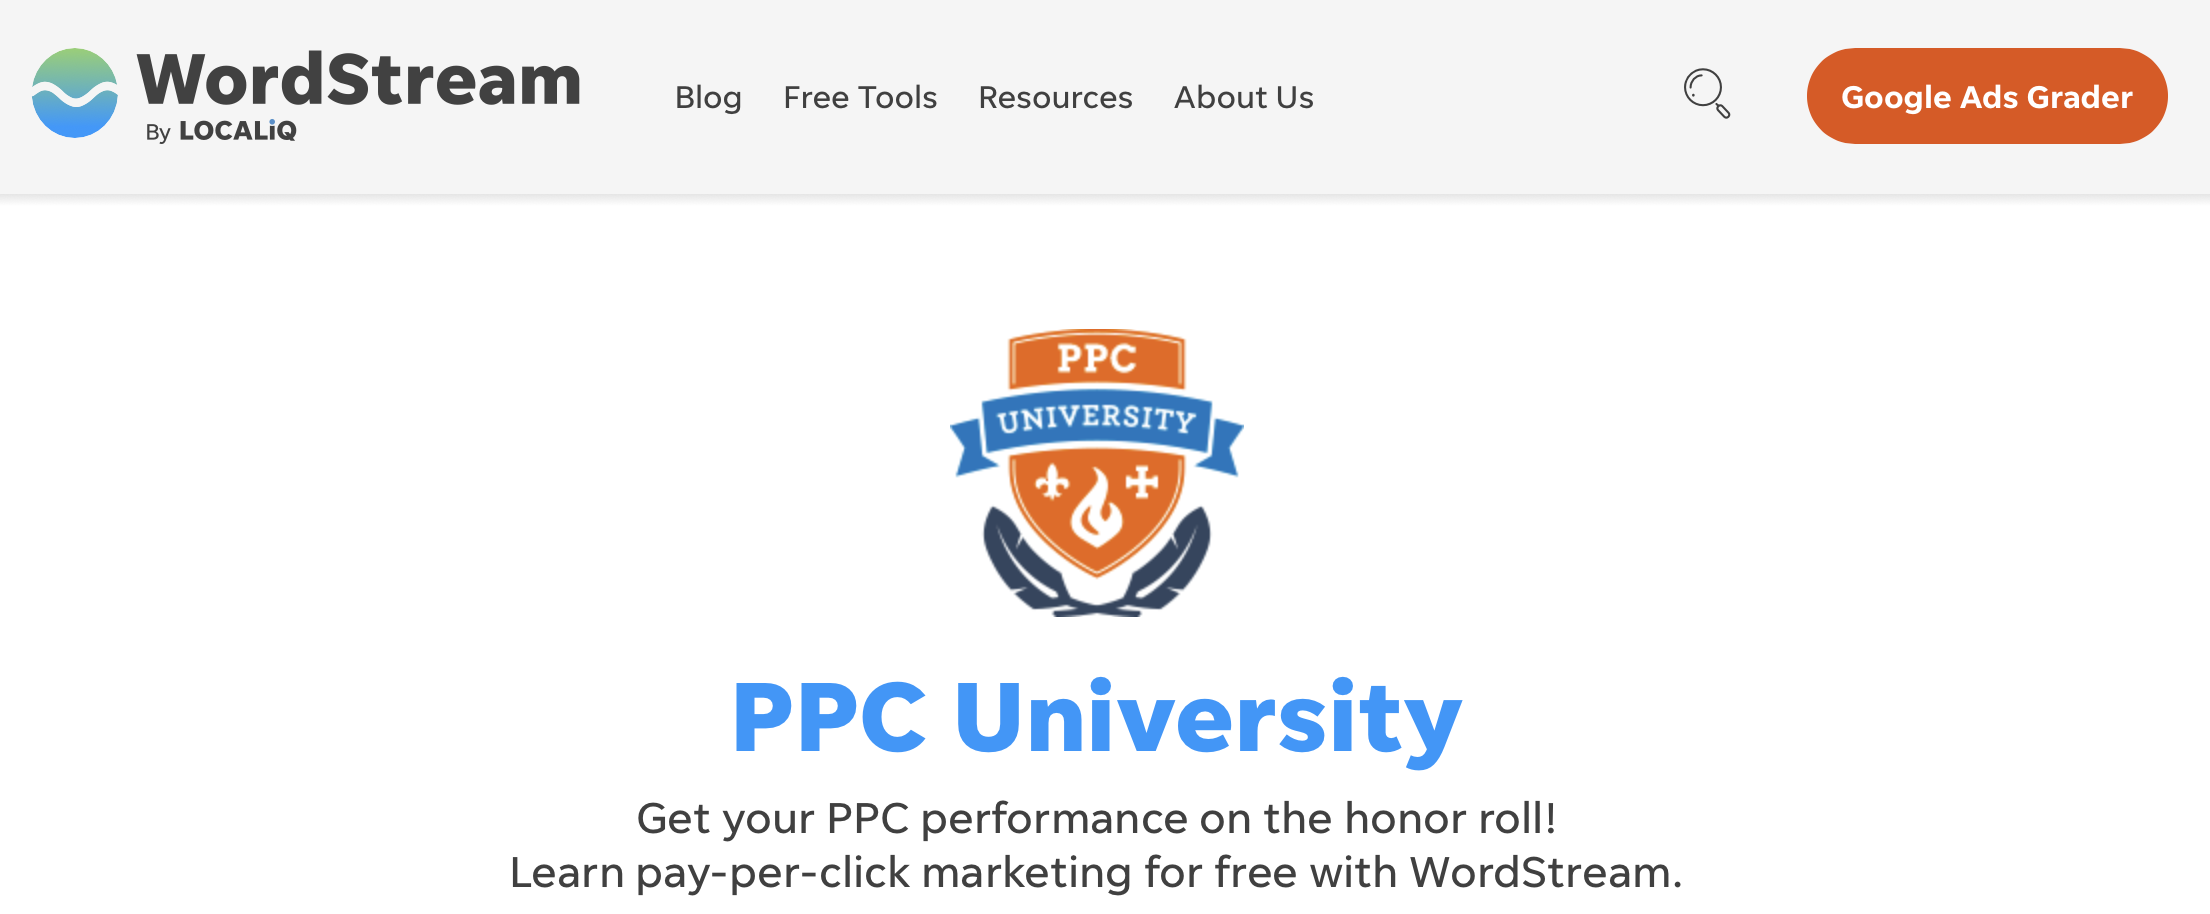 PPC University